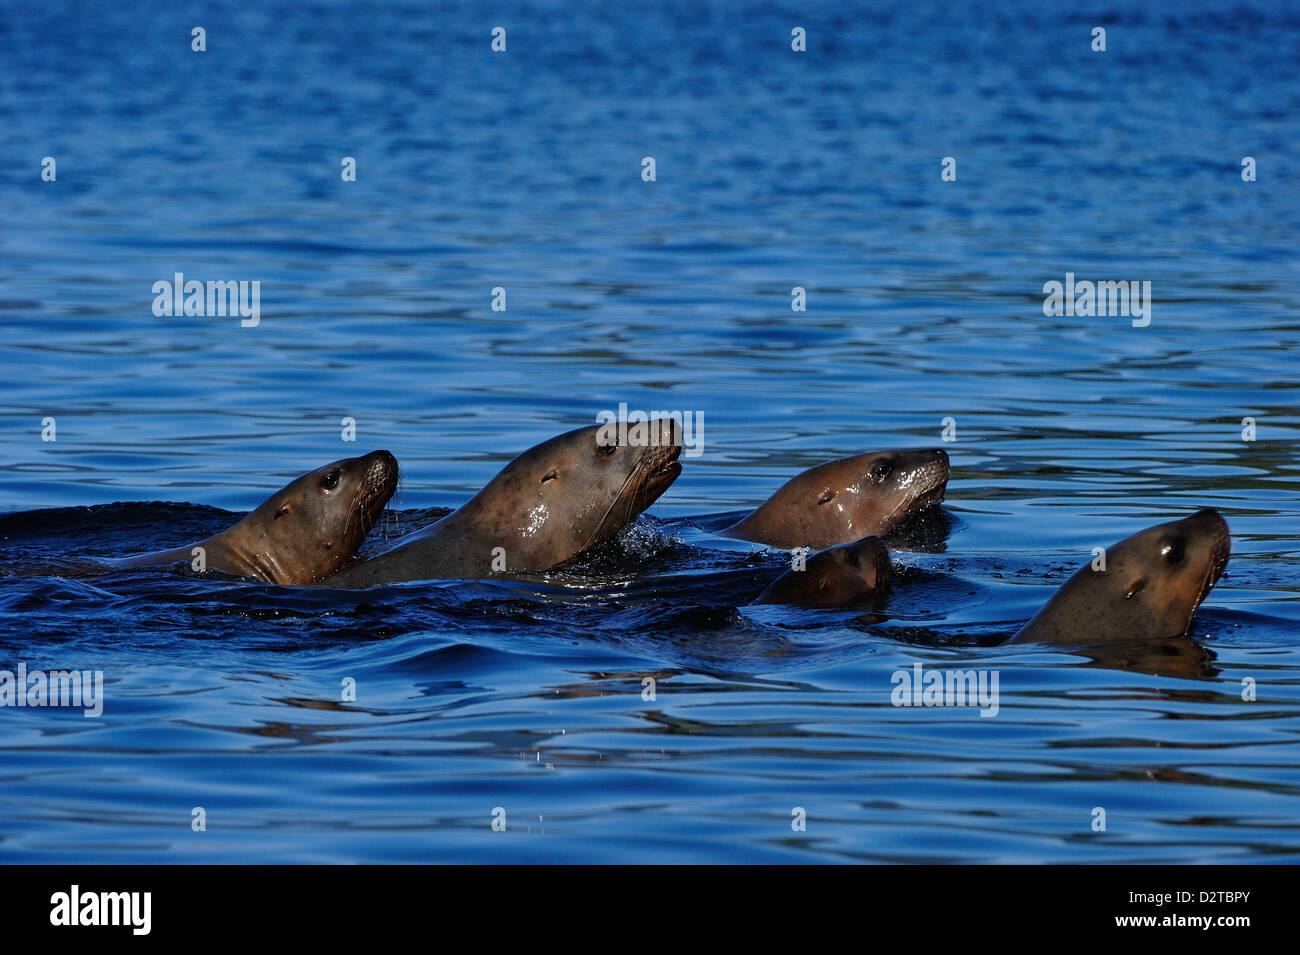 Lobos de mar moviéndose juntas en mar, Great Bear Rainforest, British Columbia, Canadá, América del Norte Foto de stock